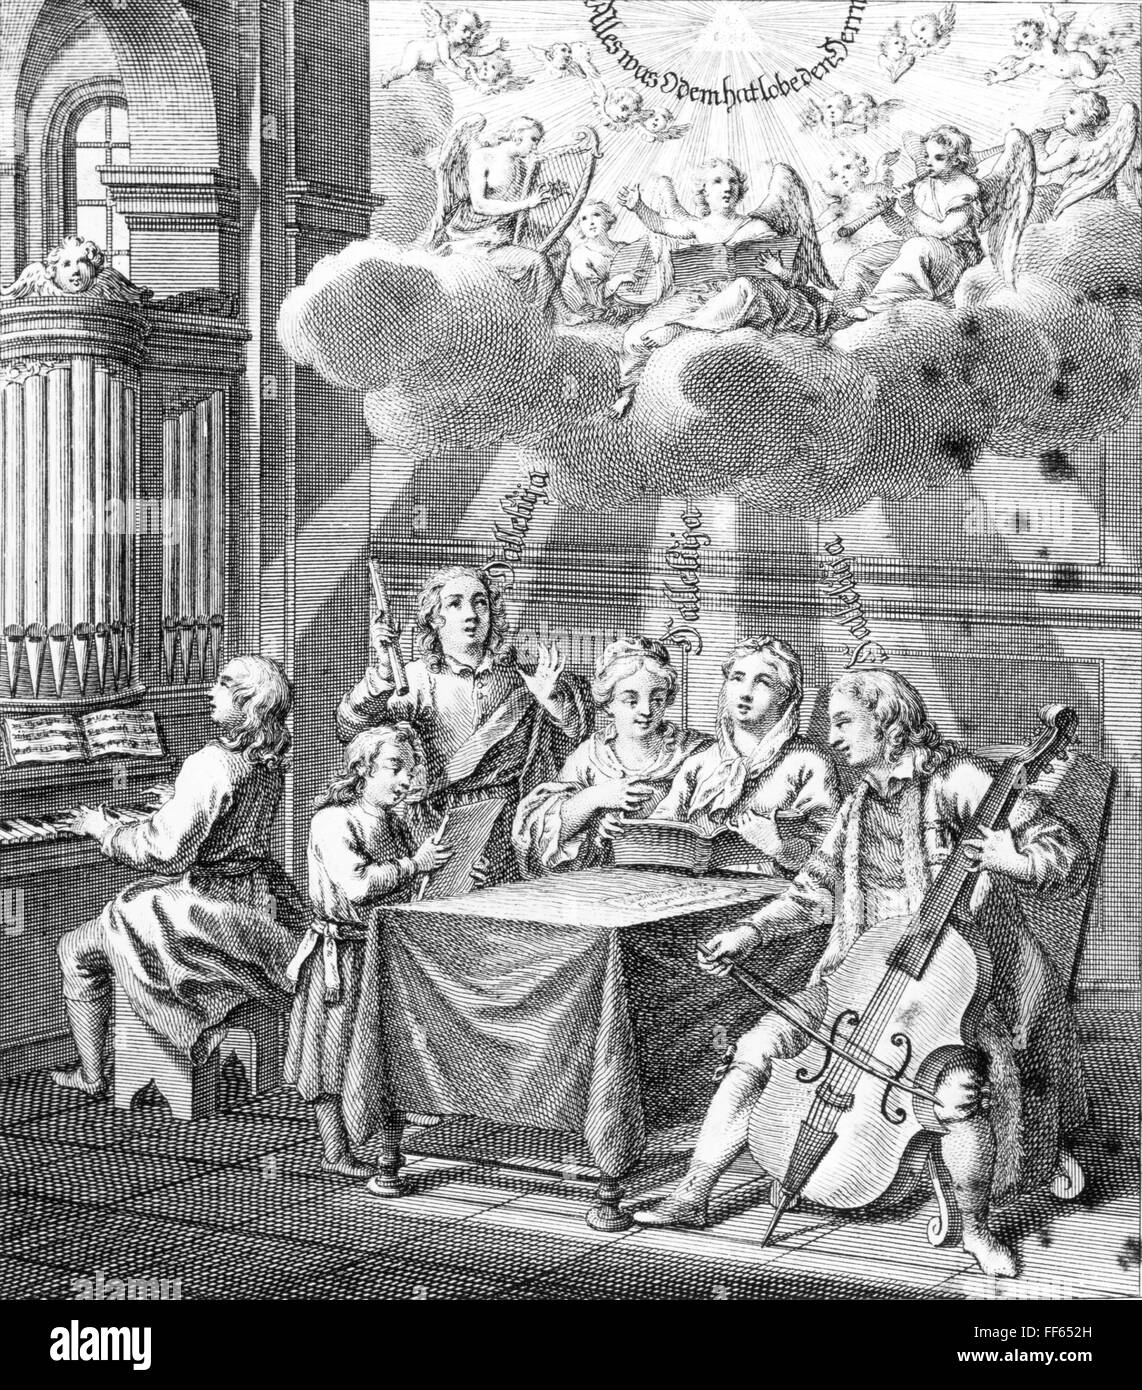 La musique, les allégories, la musique sacrée, tout ce qui a souffle louez le Seigneur', gravure sur cuivre, Allemagne, 1ère moitié 18e siècle, l'artiste n'a pas d'auteur pour être effacé Banque D'Images